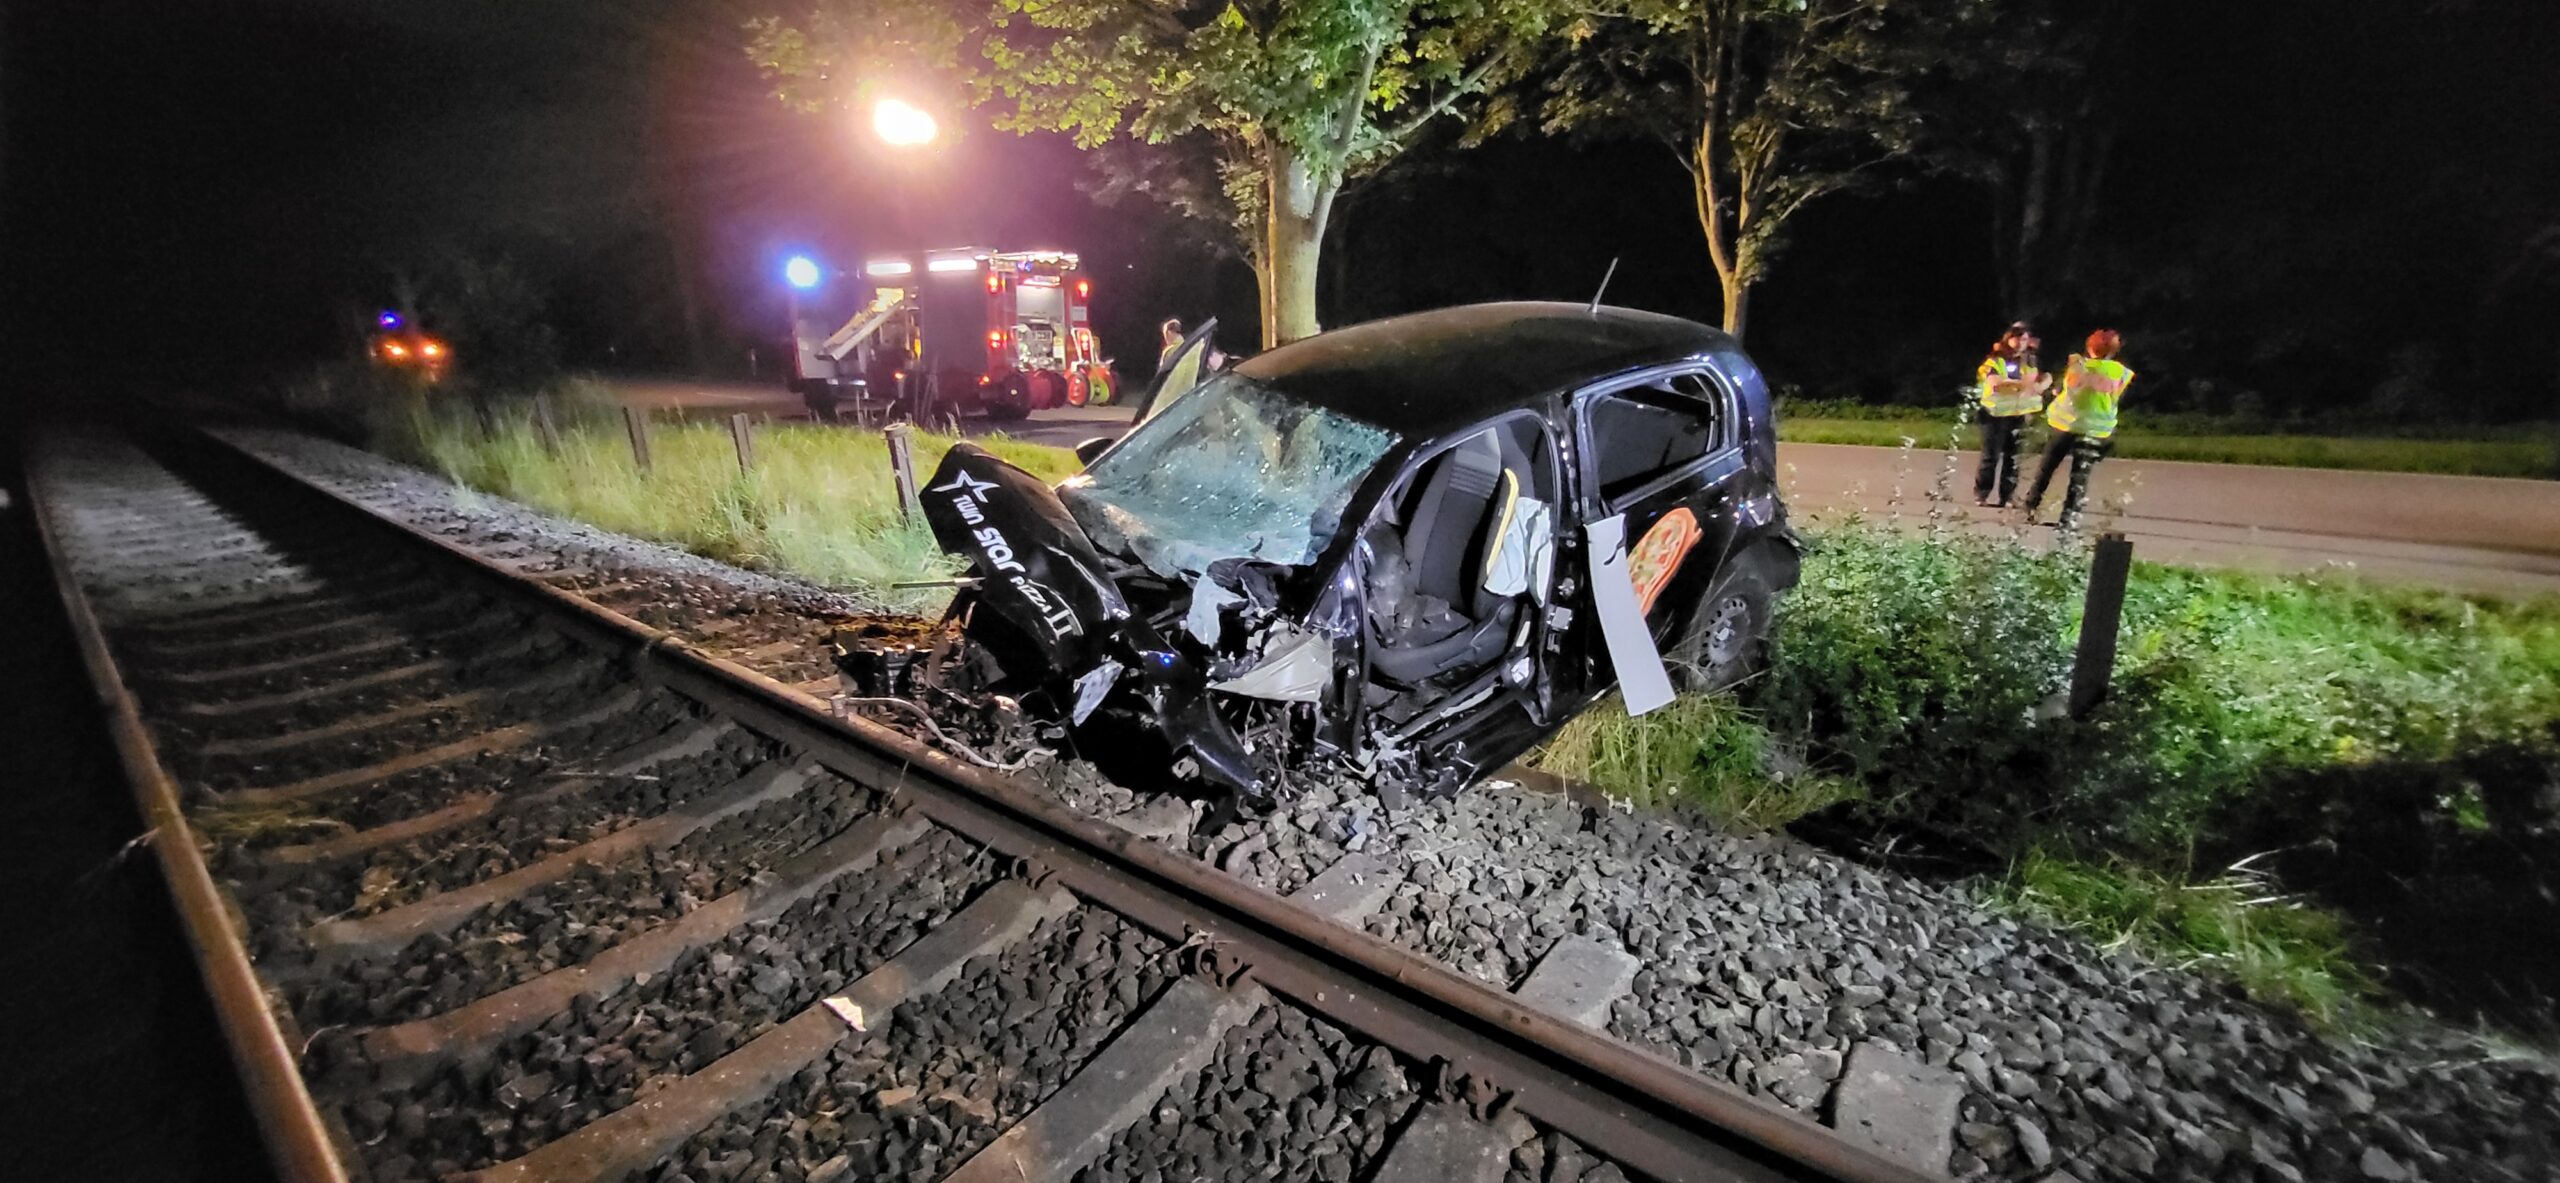 Schwerer Unfall in Lübeck – Pizza-Fahrer lebensgefährlich verletzt